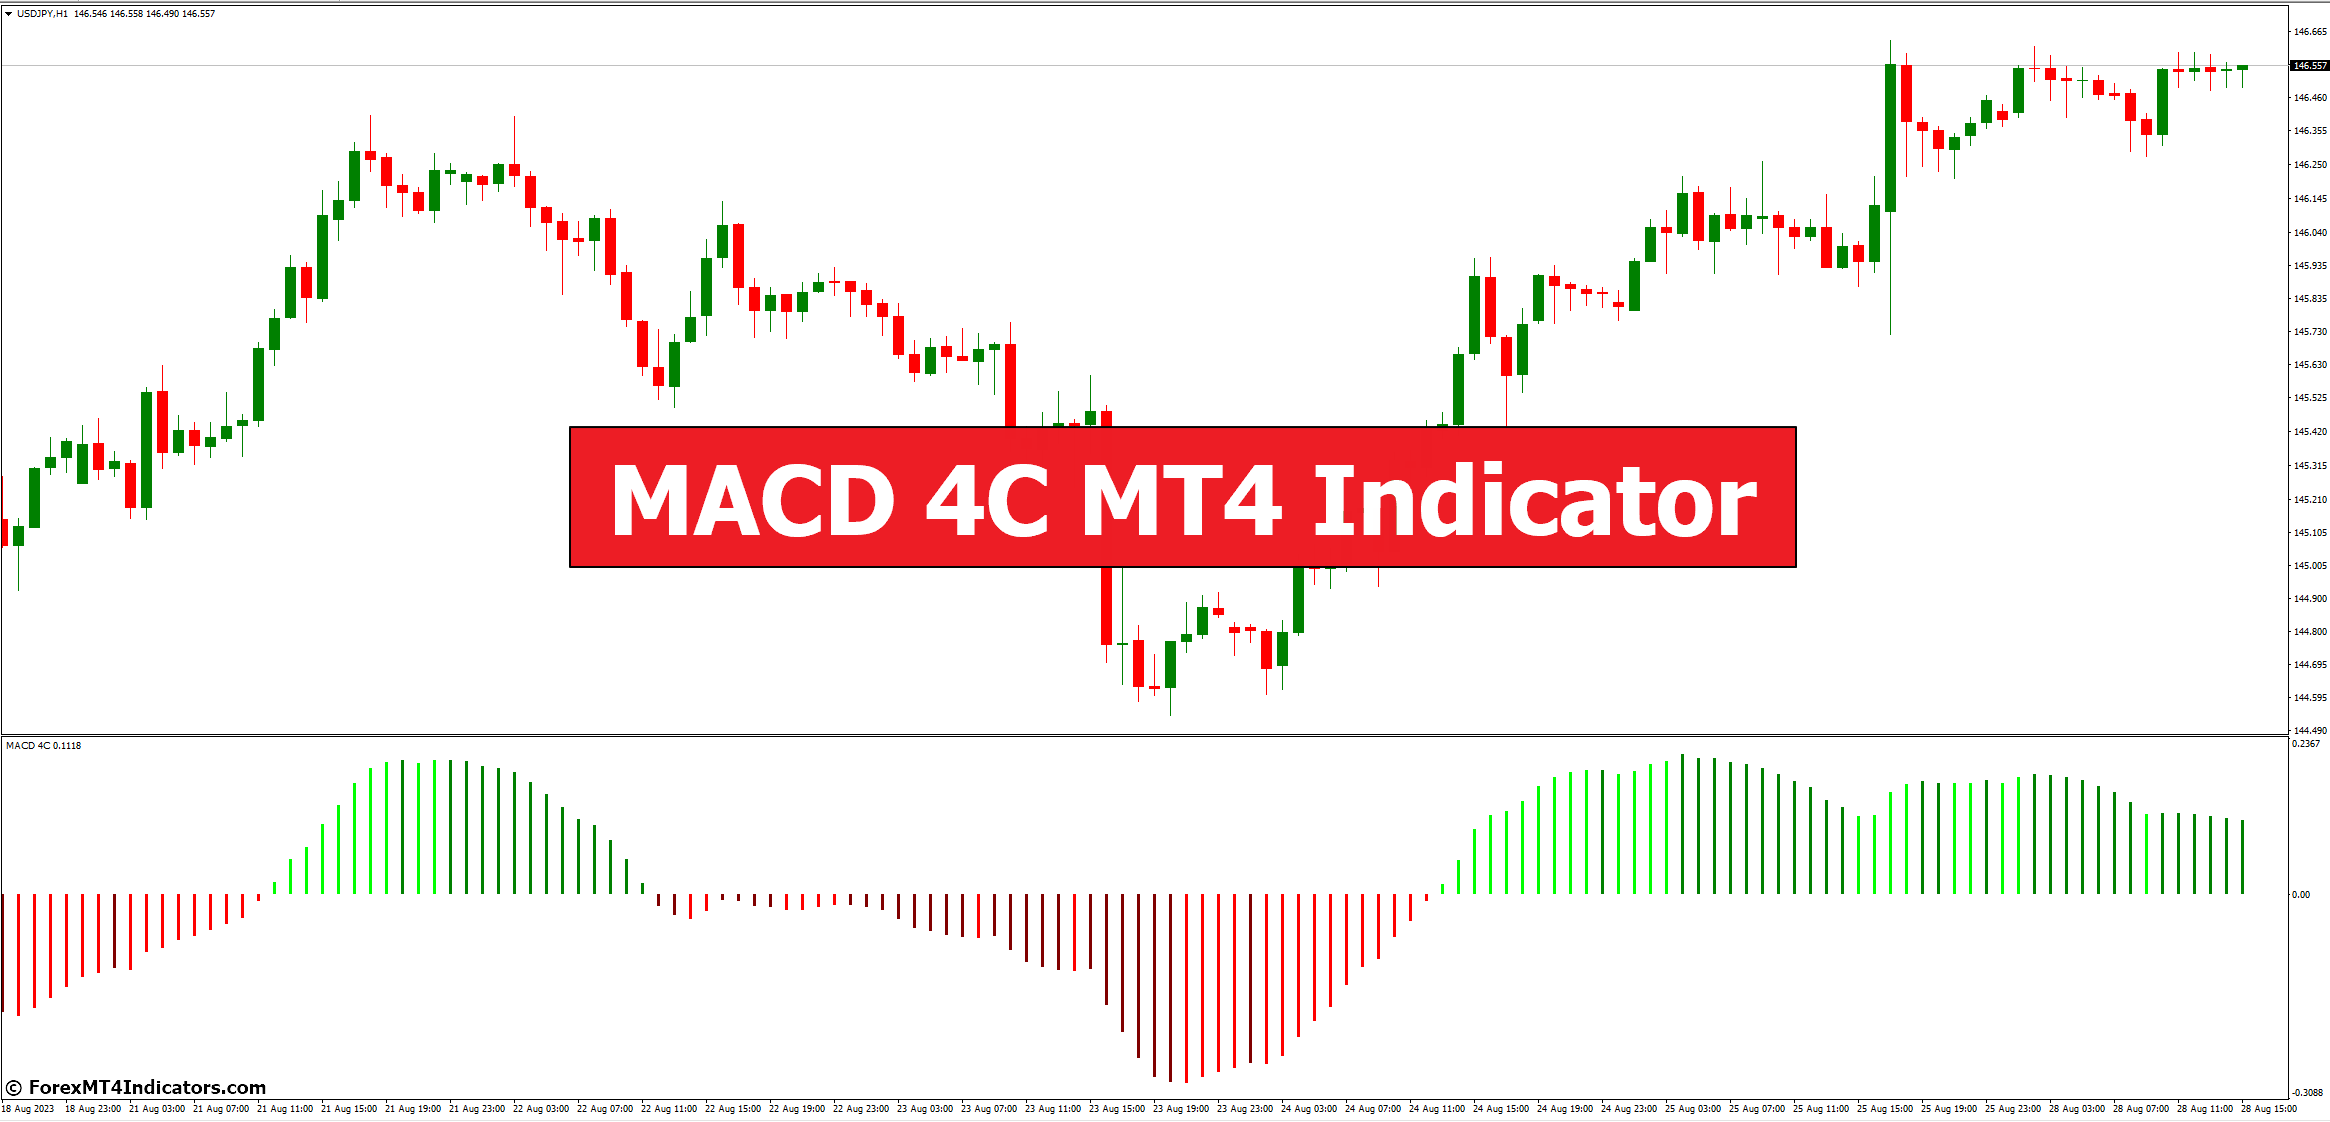 Indicador MACD 4C MT4